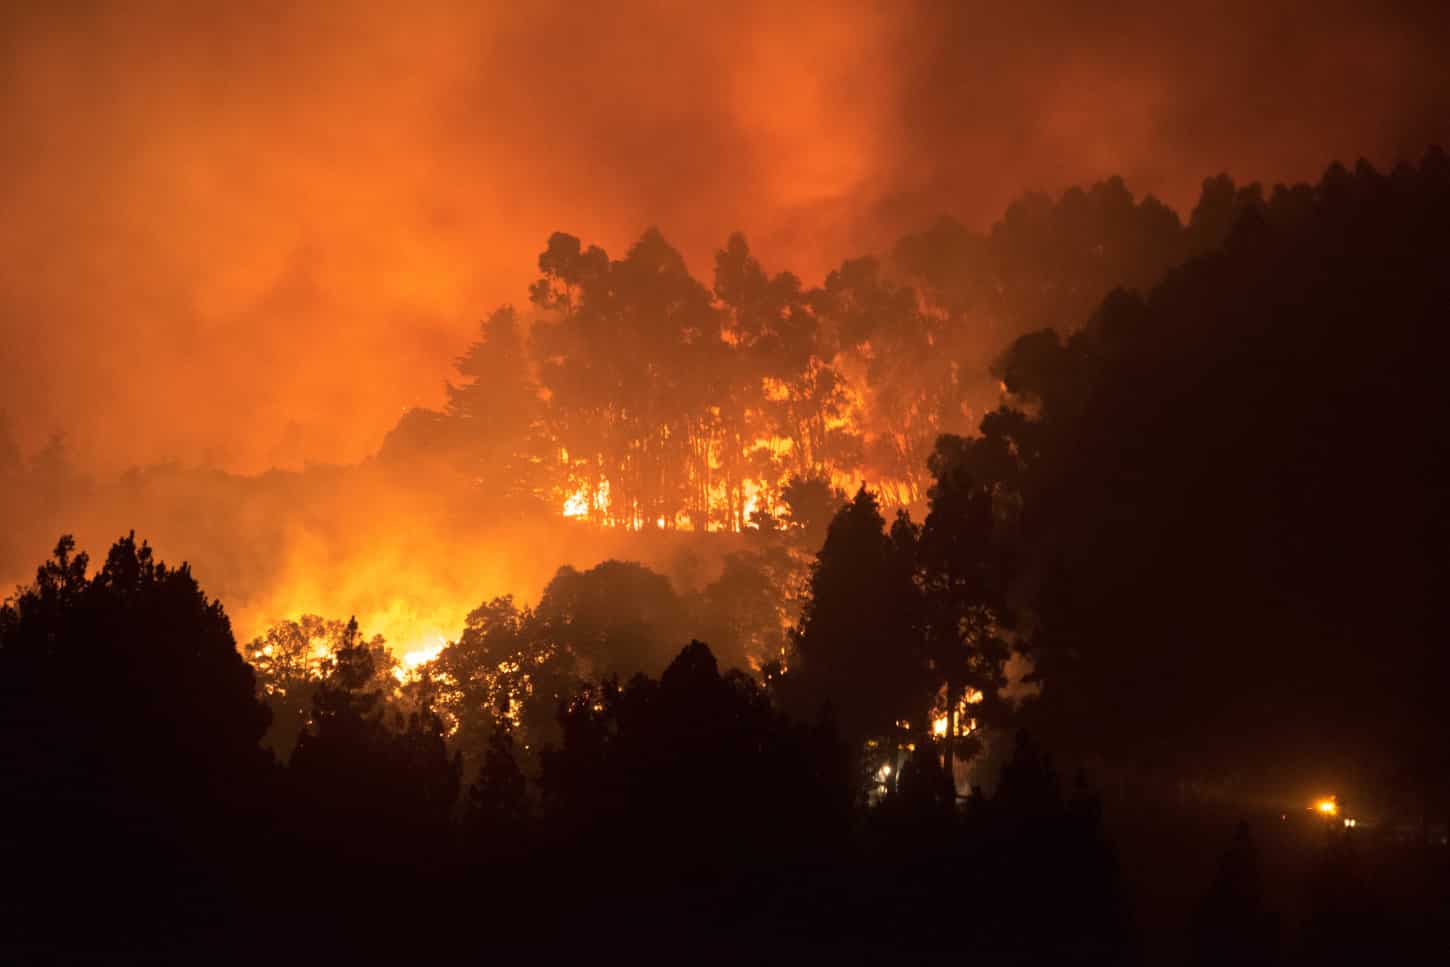 Declarada la alerta por riesgo de incendios en El Hierro, La Gomera, La Palma, Tenerife y Gran Canaria